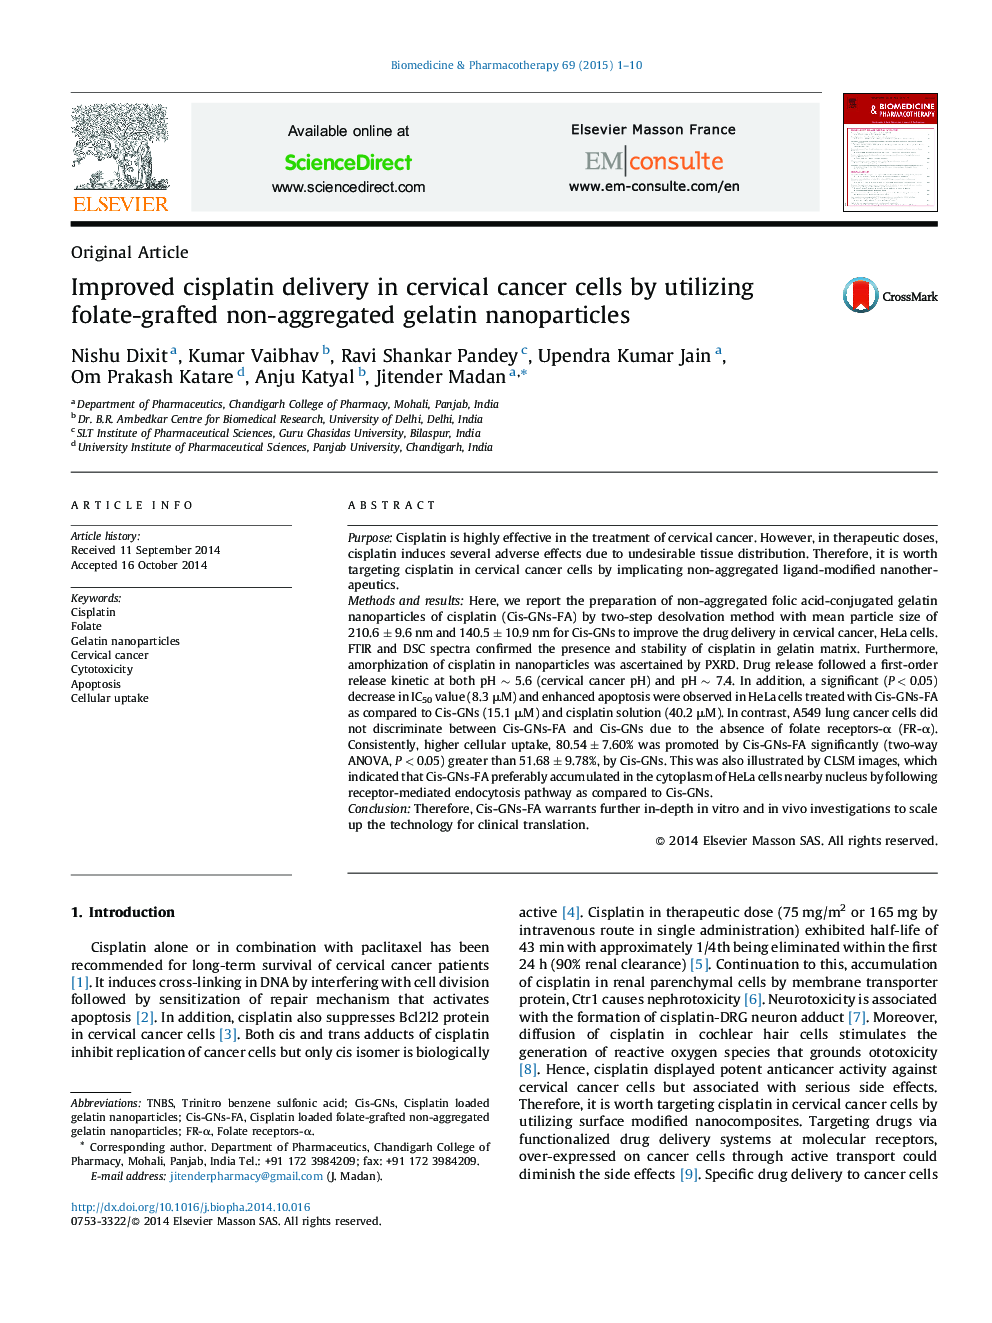 بهبودی تحویل سیس پلاتین در سلول های سرطانی گردن با استفاده از نانوذرات ژلاتین غیر تجمعی فولات 